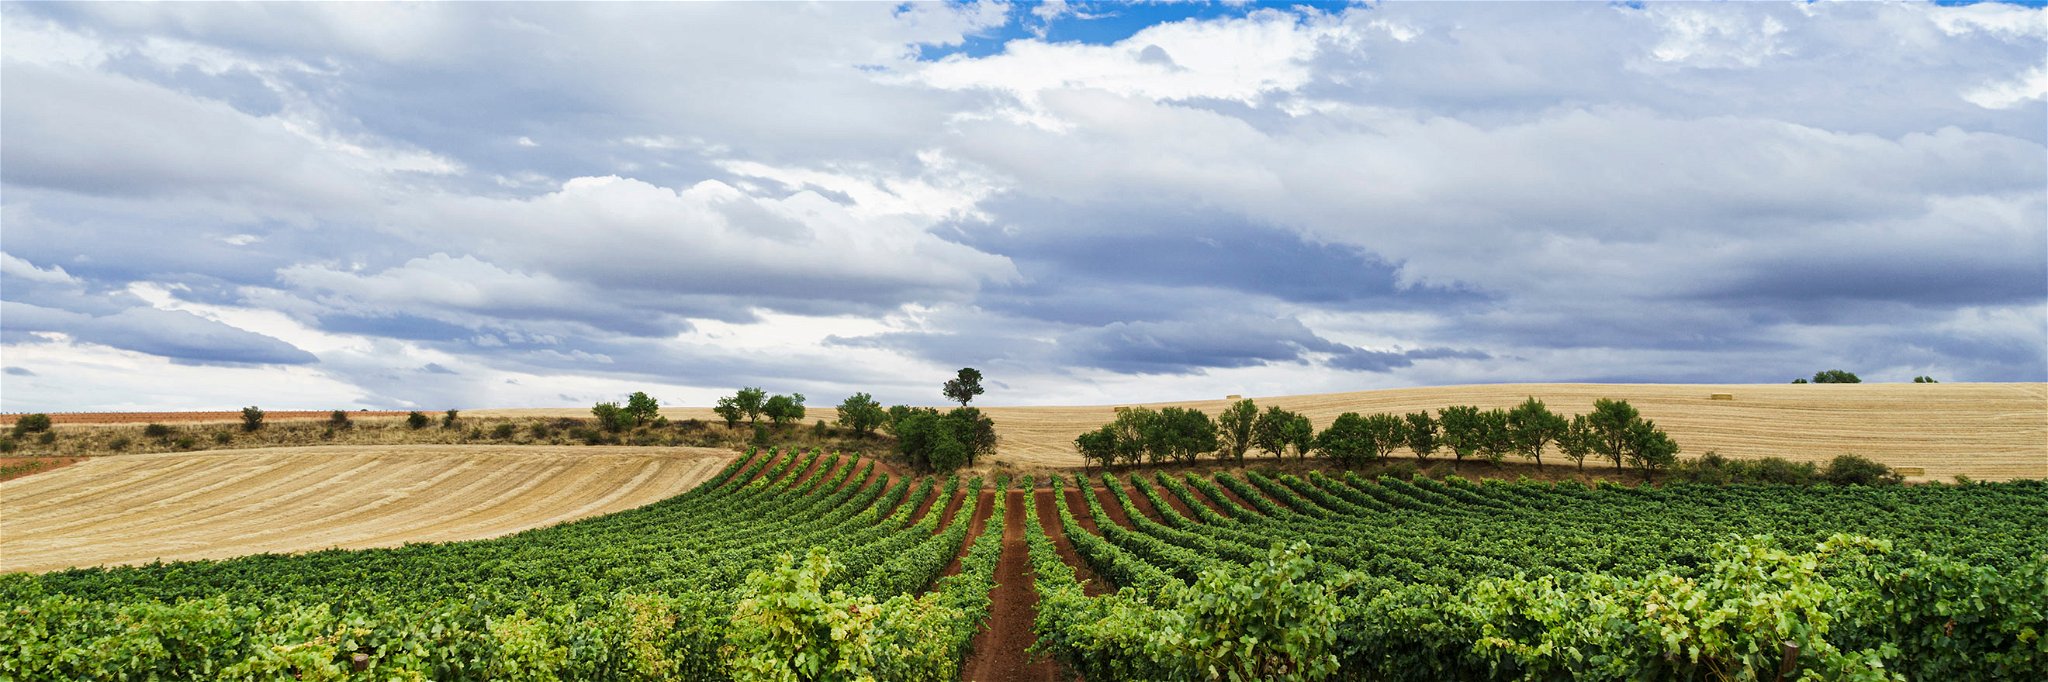 Ribera del Duero liegt in der grossen Weinbauregion Kastilien-Leon im Norden Spaniens.